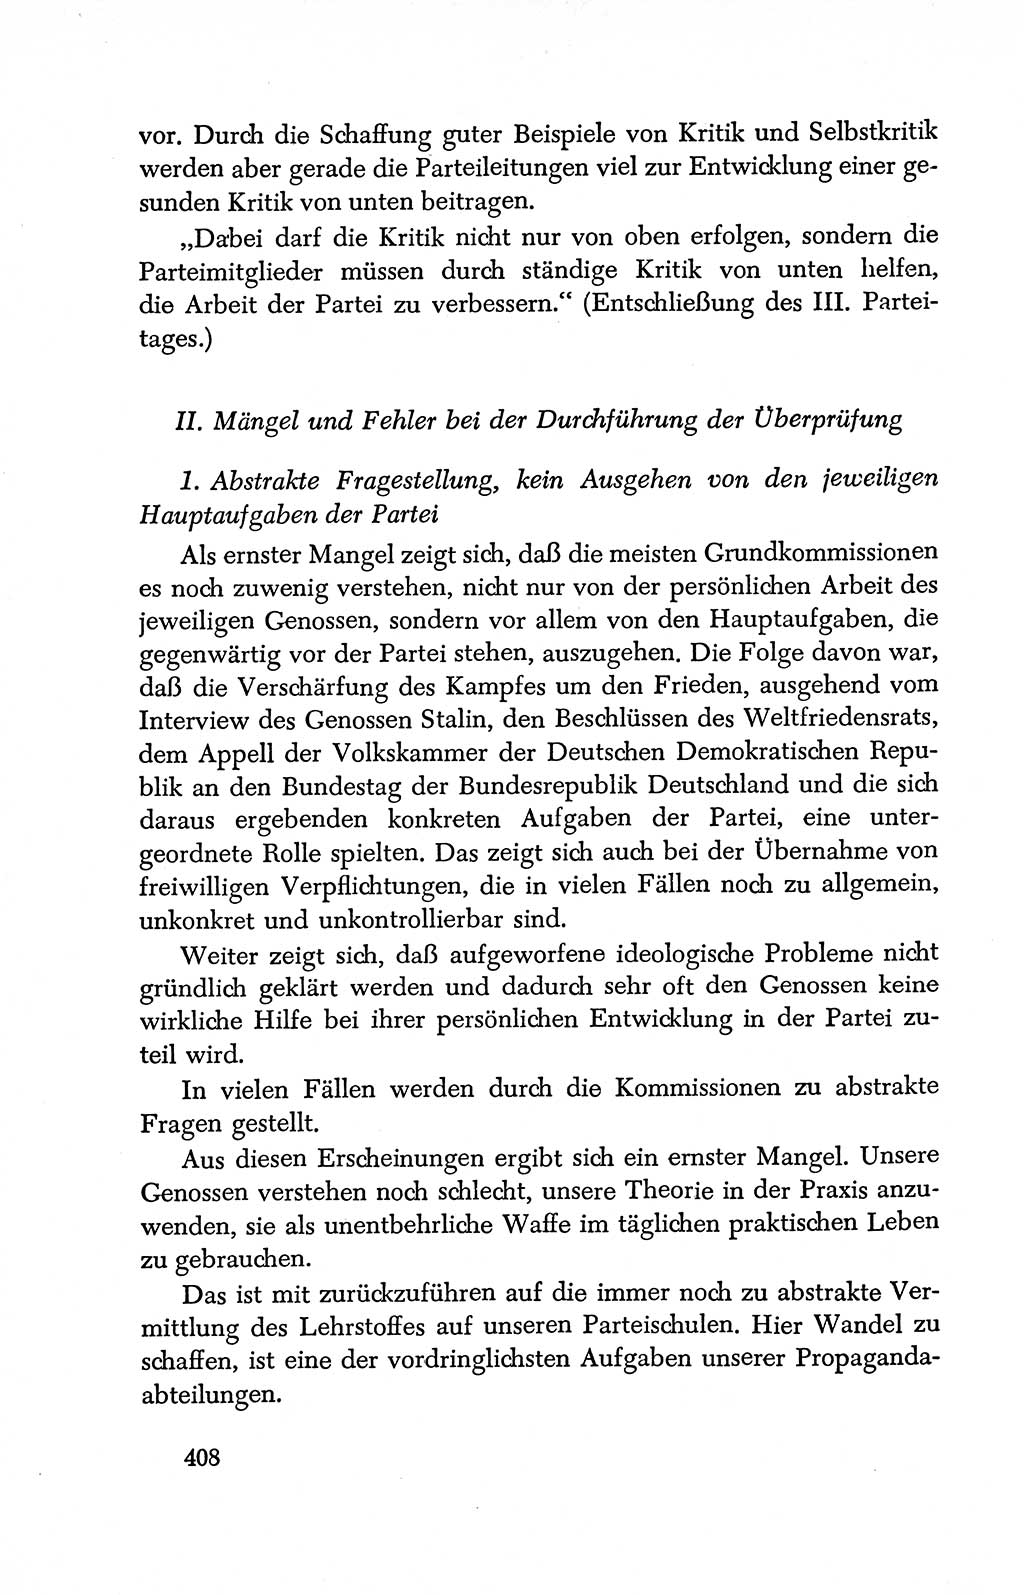 Dokumente der Sozialistischen Einheitspartei Deutschlands (SED) [Deutsche Demokratische Republik (DDR)] 1950-1952, Seite 408 (Dok. SED DDR 1950-1952, S. 408)